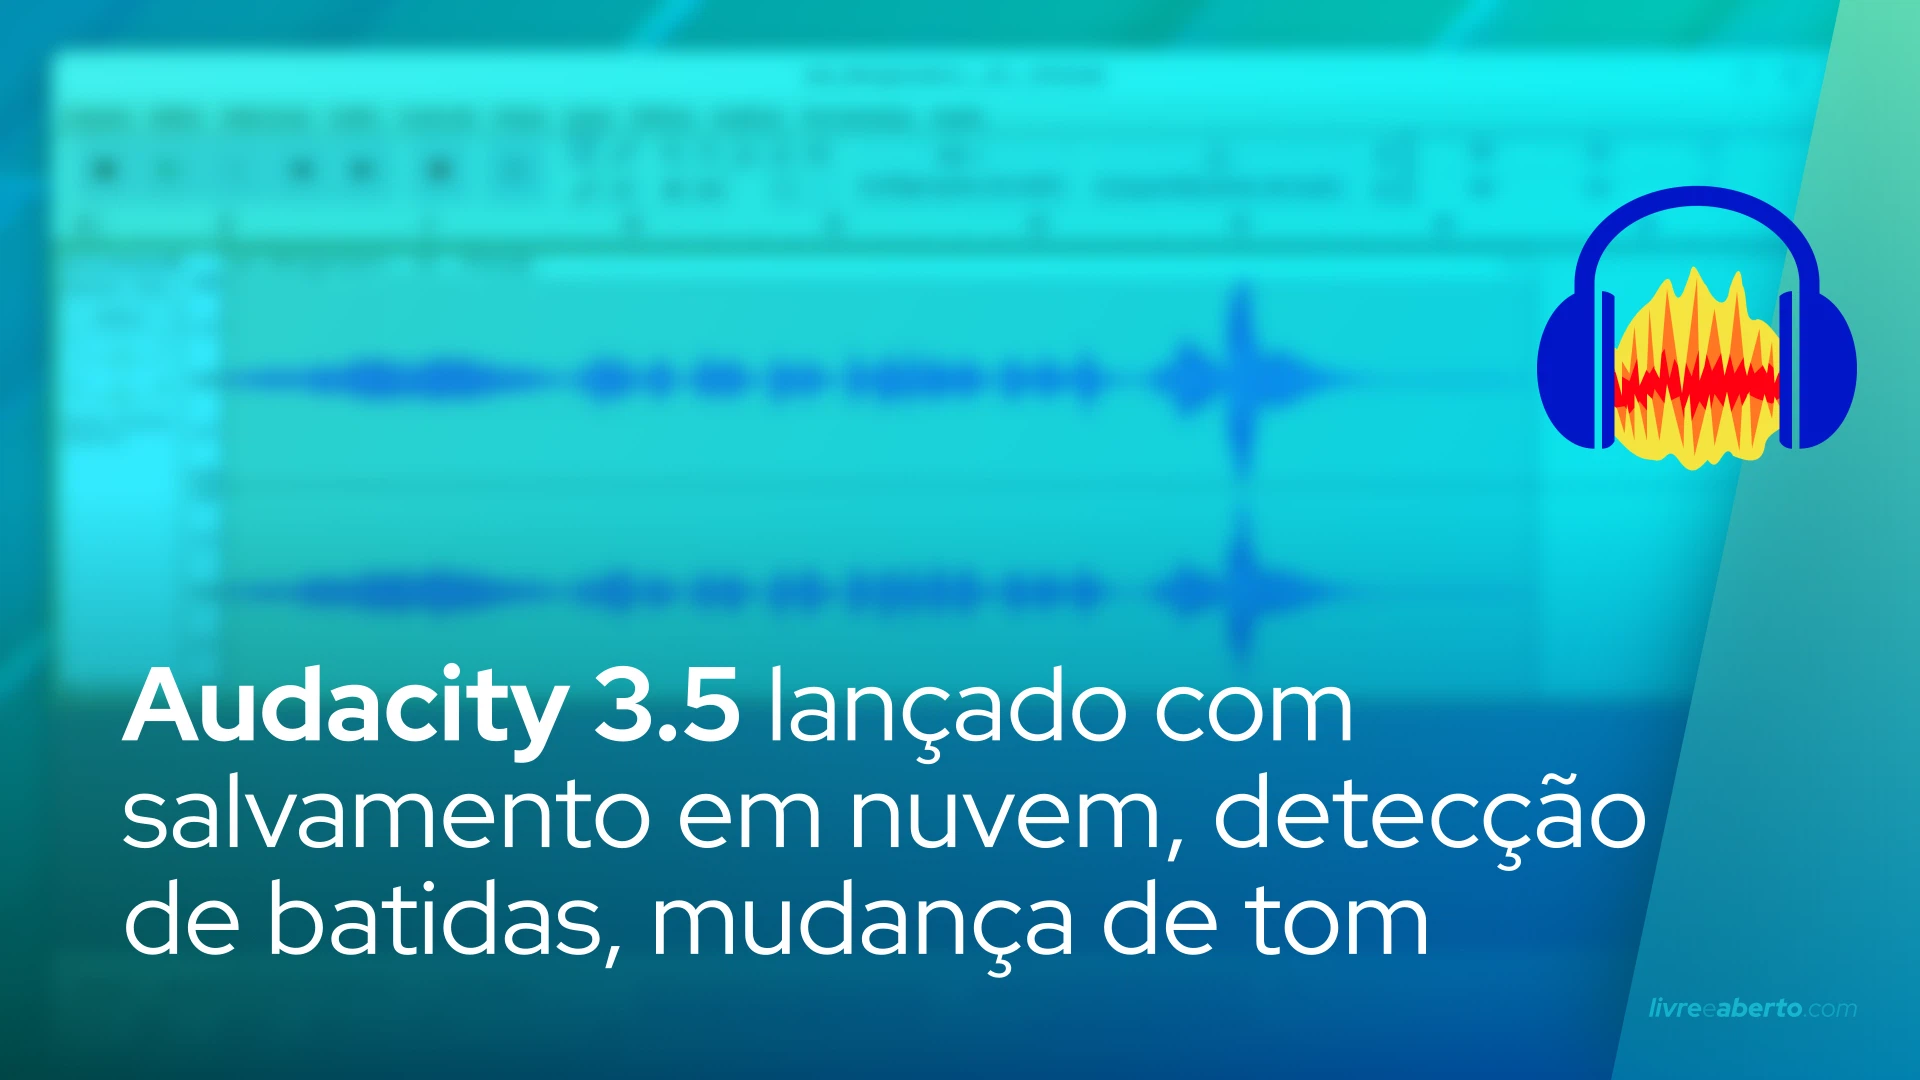 Audacity 3.5 lançado com salvamento em nuvem, detecção de batidas, mudança de tom e muito mais